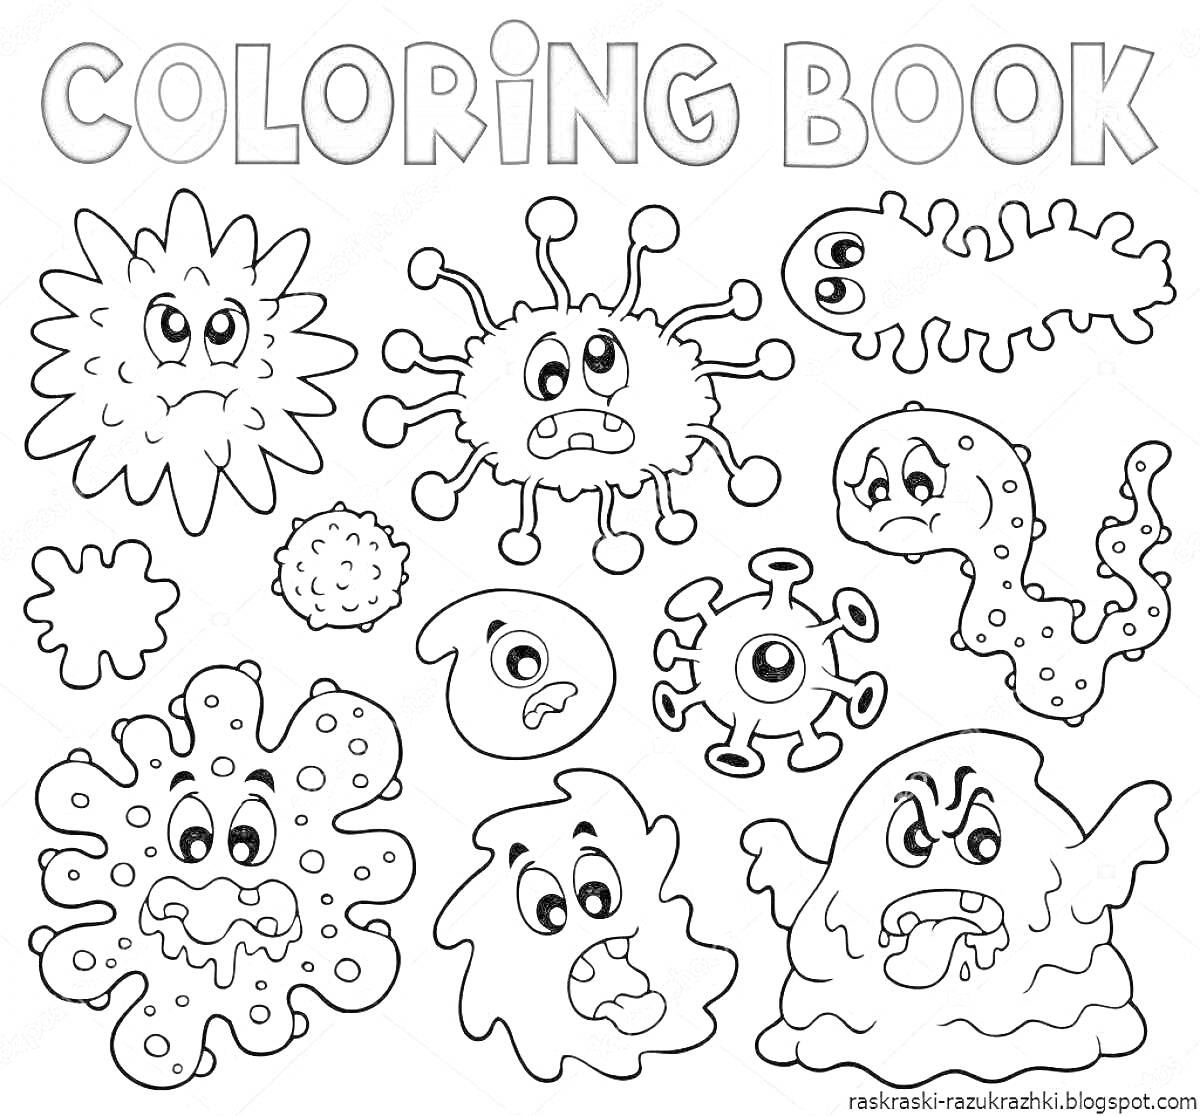 Раскраска Микробы с различными выражениями лиц и формами